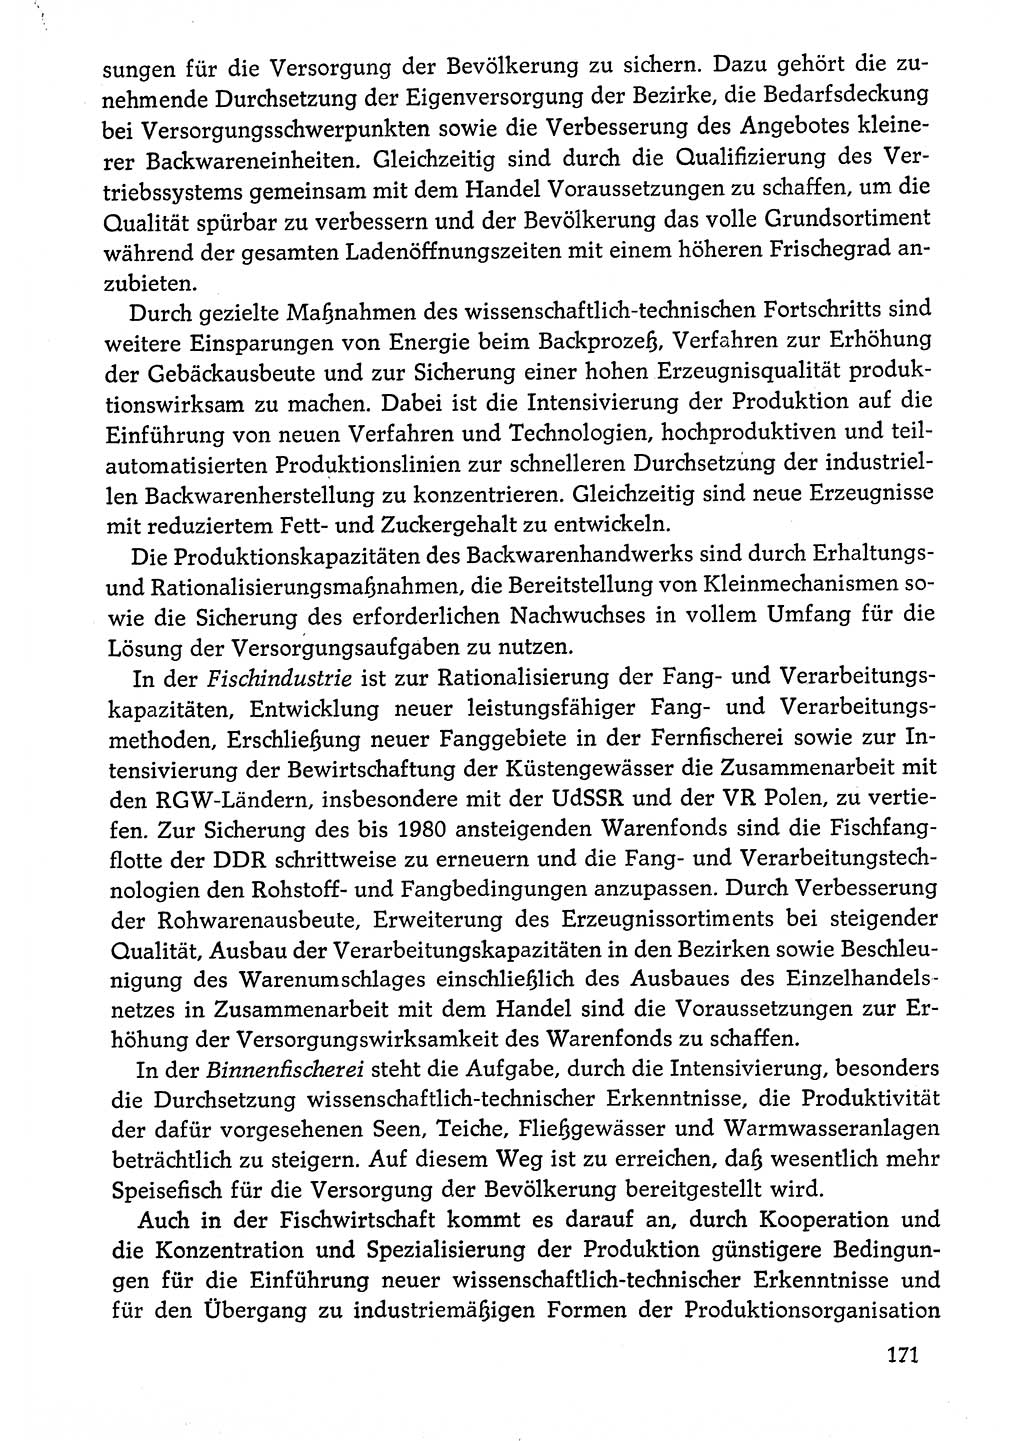 Dokumente der Sozialistischen Einheitspartei Deutschlands (SED) [Deutsche Demokratische Republik (DDR)] 1976-1977, Seite 171 (Dok. SED DDR 1976-1977, S. 171)